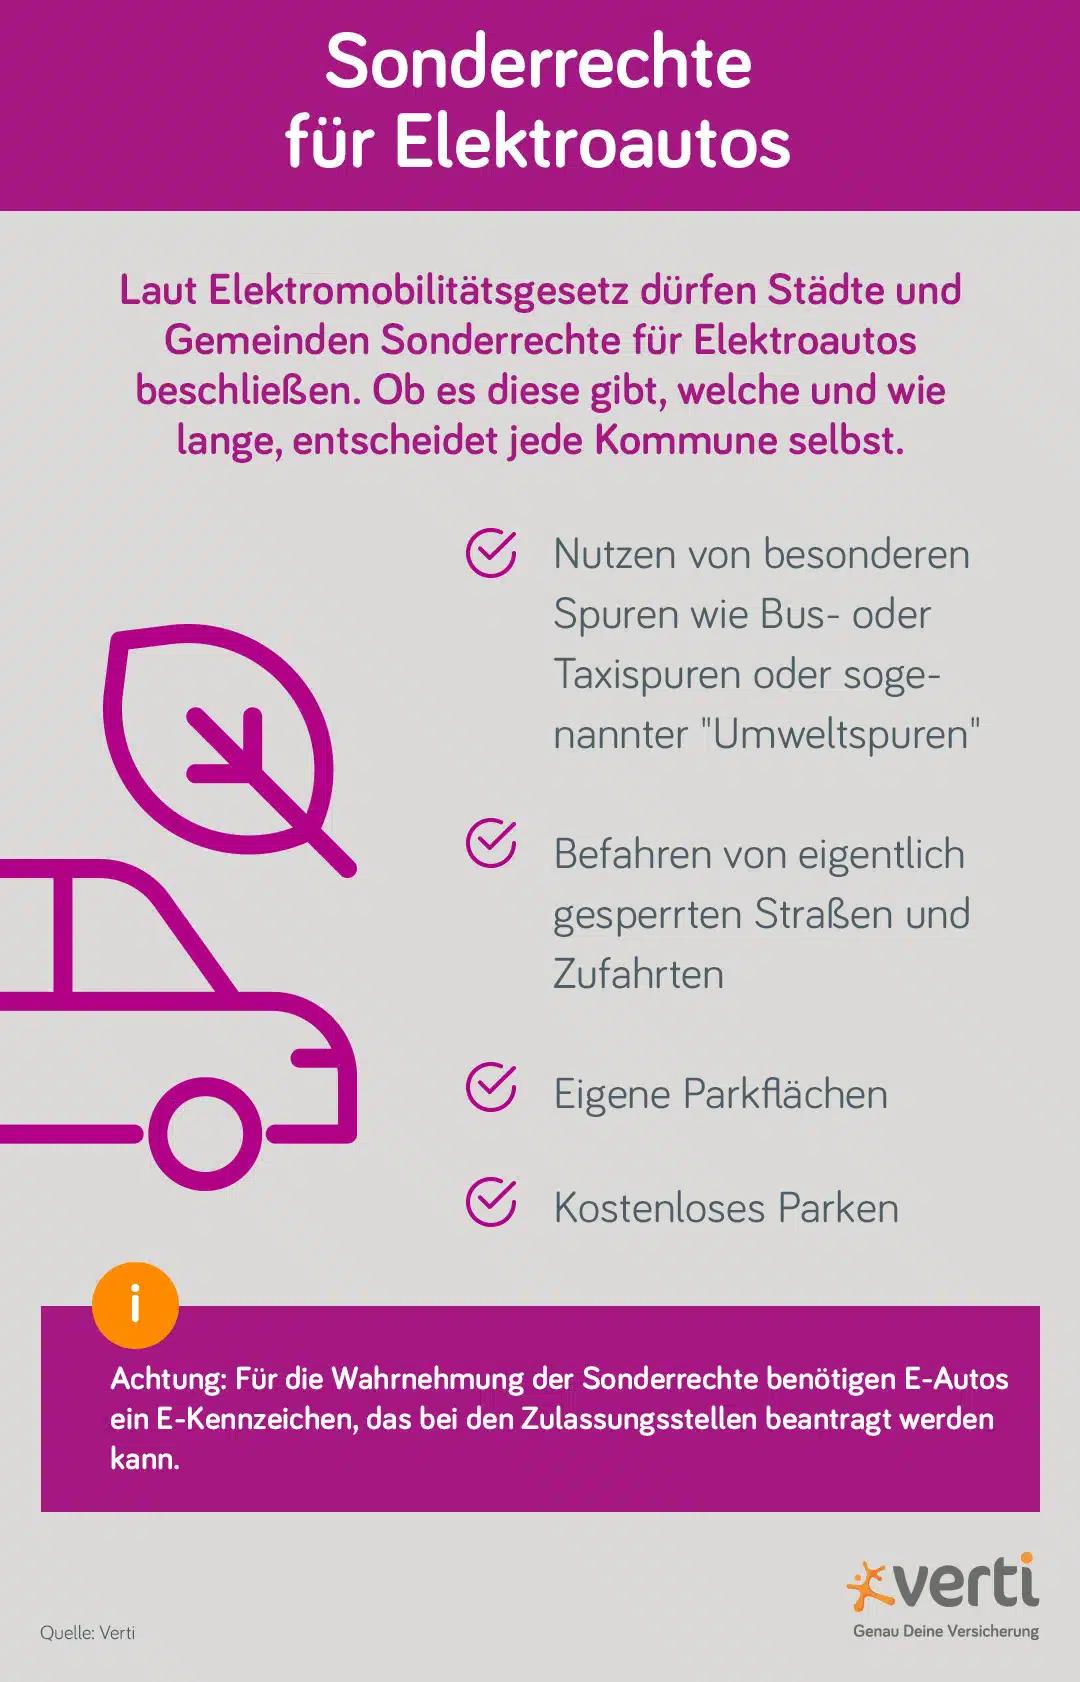 Vorteile und Sonderrechte für Elektroautos